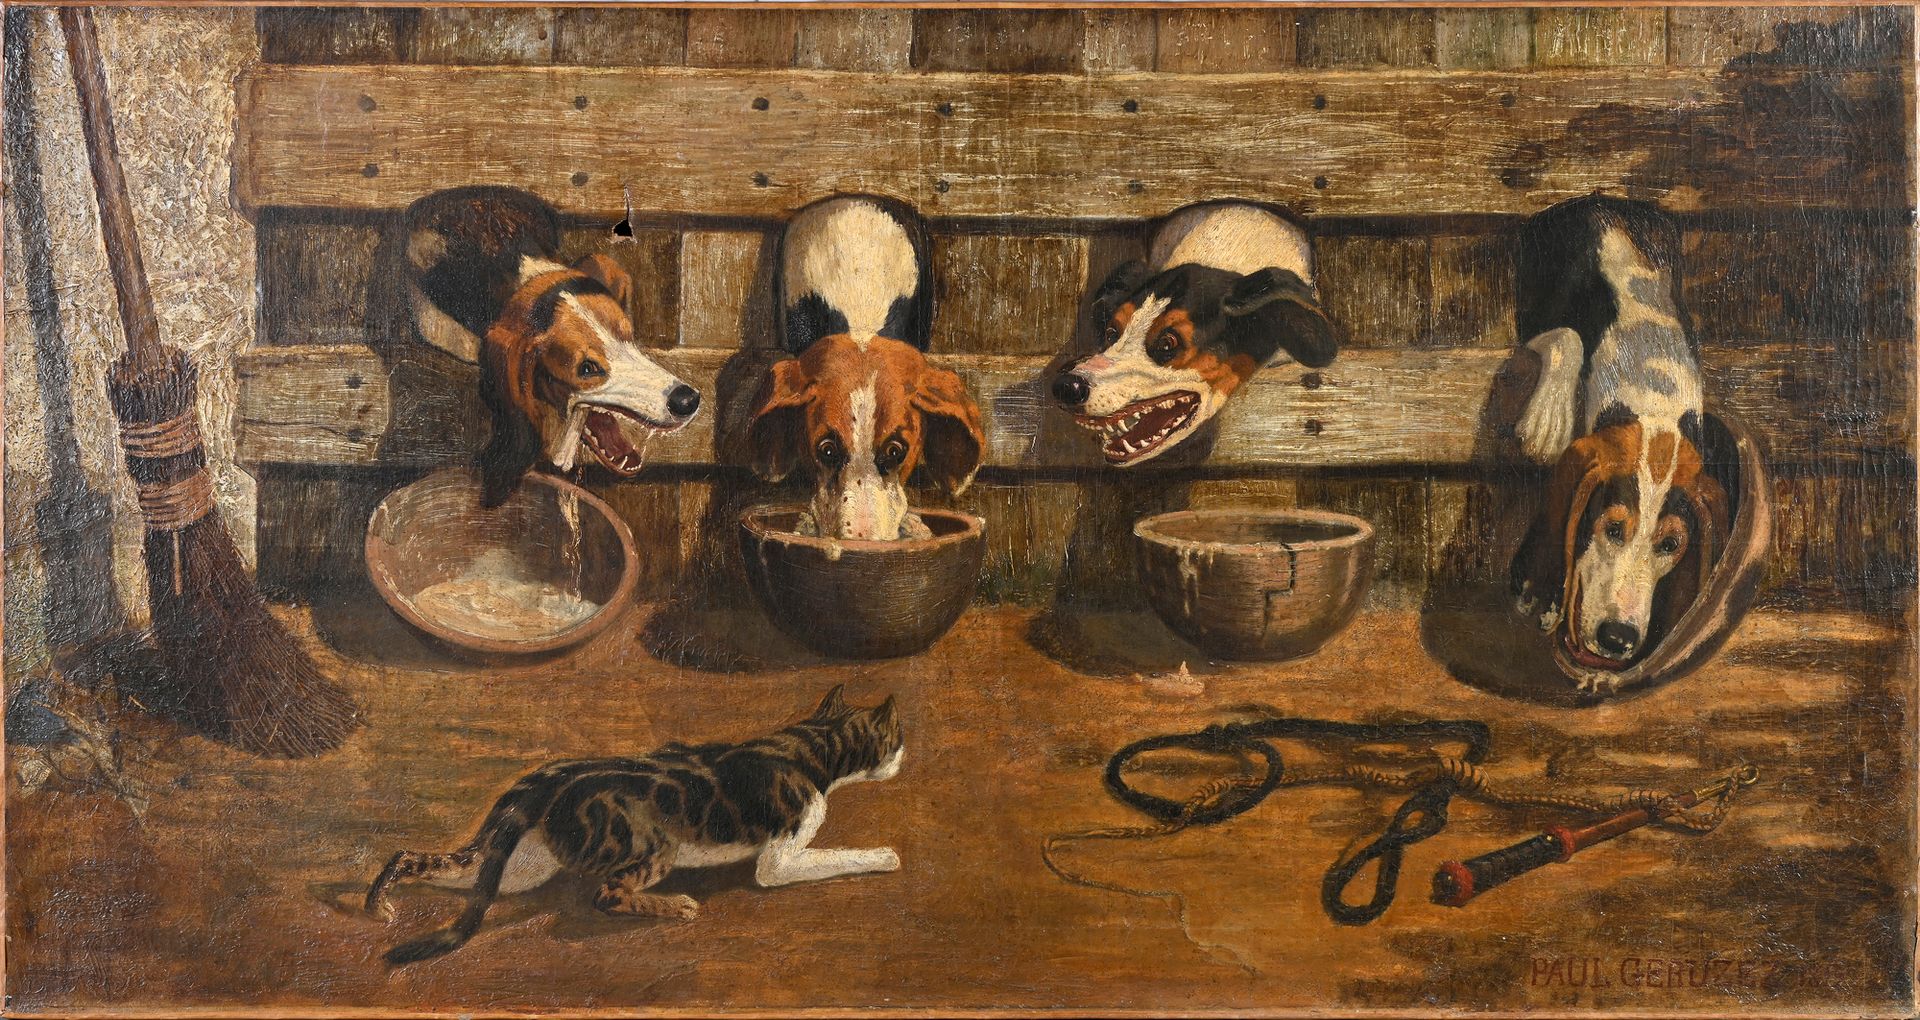 Paul Geruez (XIXe-XXe siècle) 犬舍里的汤
布面油画，右下角有签名和日期，事故
90 x 170厘米